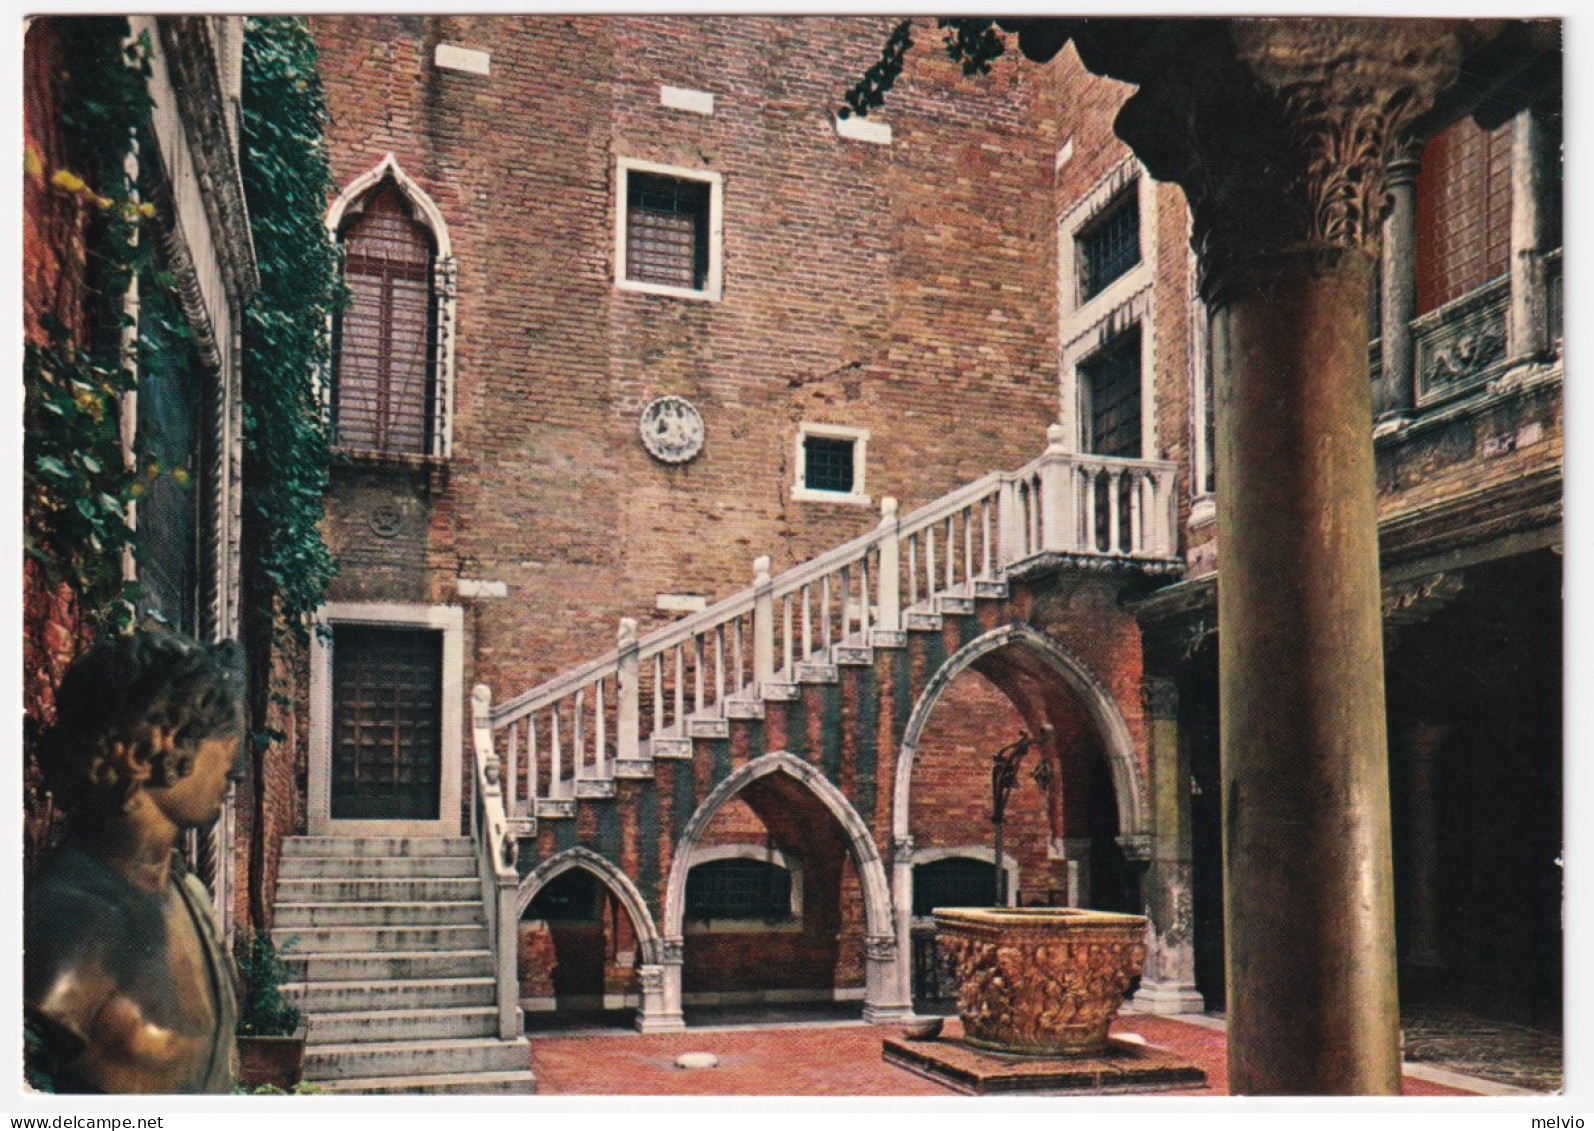 1967-FLORA Lire 20 (1020) Isolato Su Cartolina (Venezia Ca D'Oro) - Venezia (Venice)